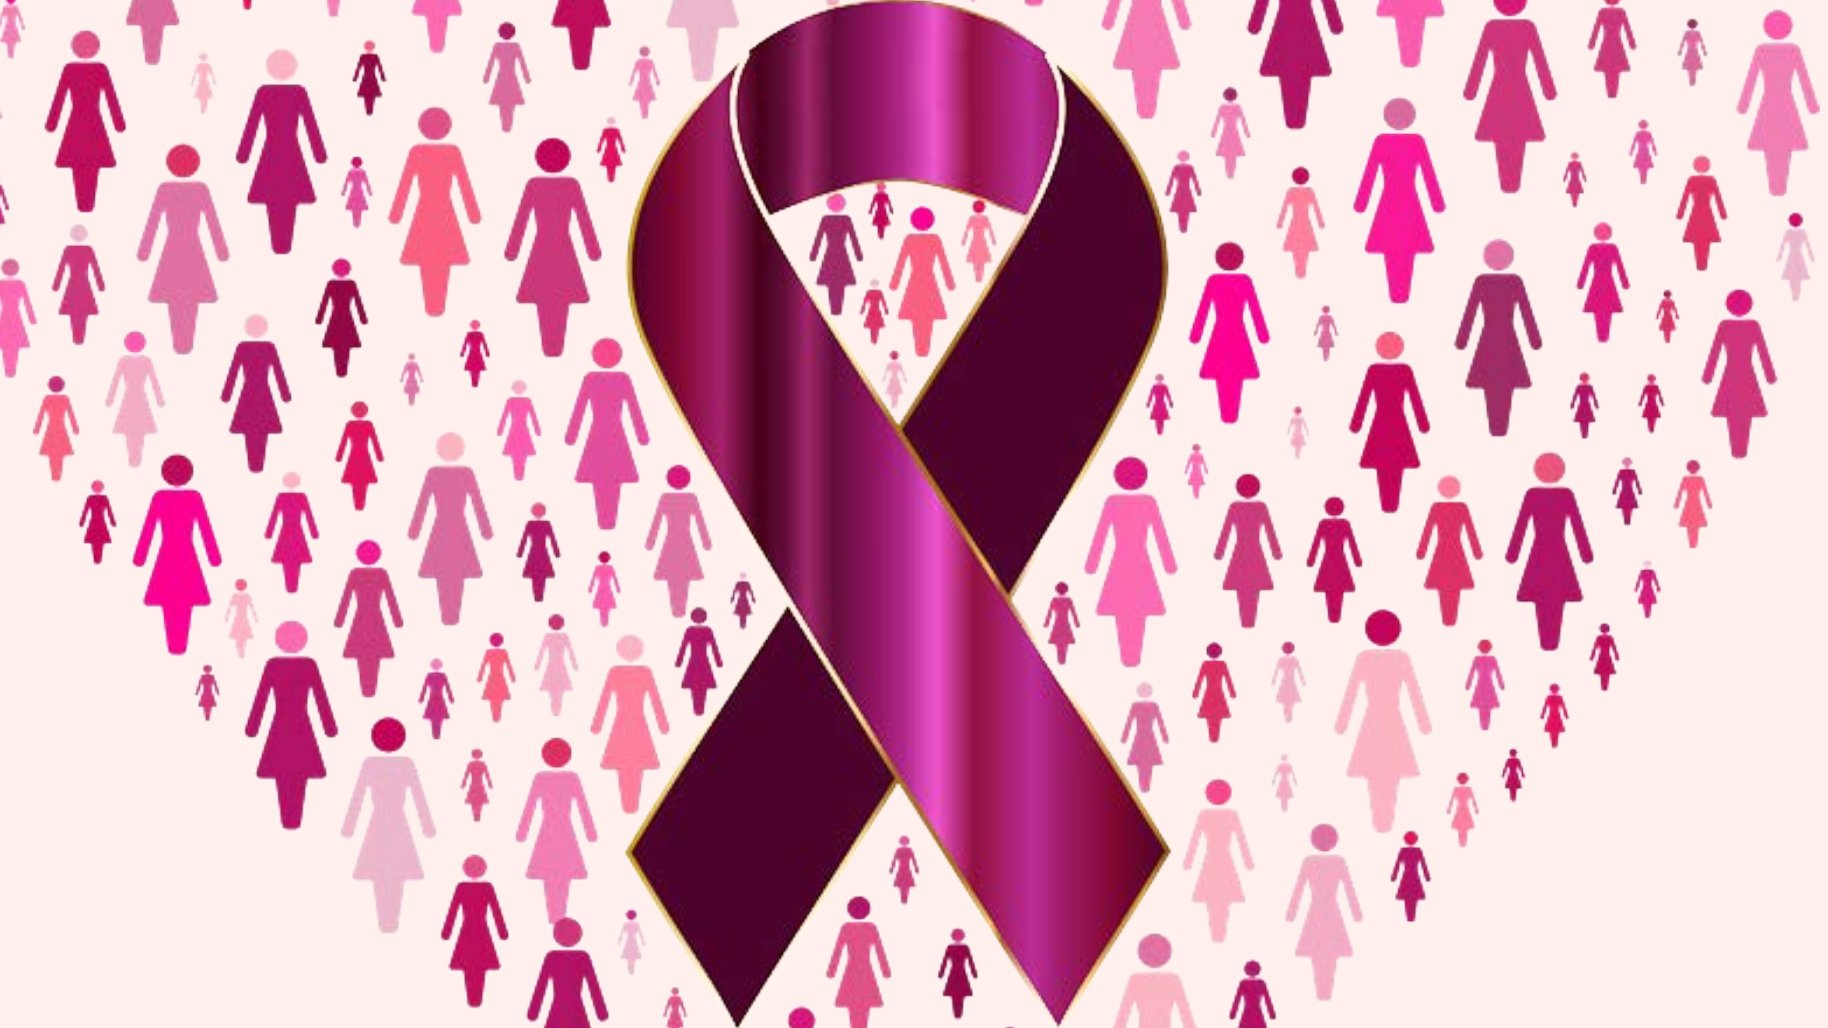 Screening gratuit pentru cancerul de col uterin și cancerul de sân în județul Neamț, în luna octombrie